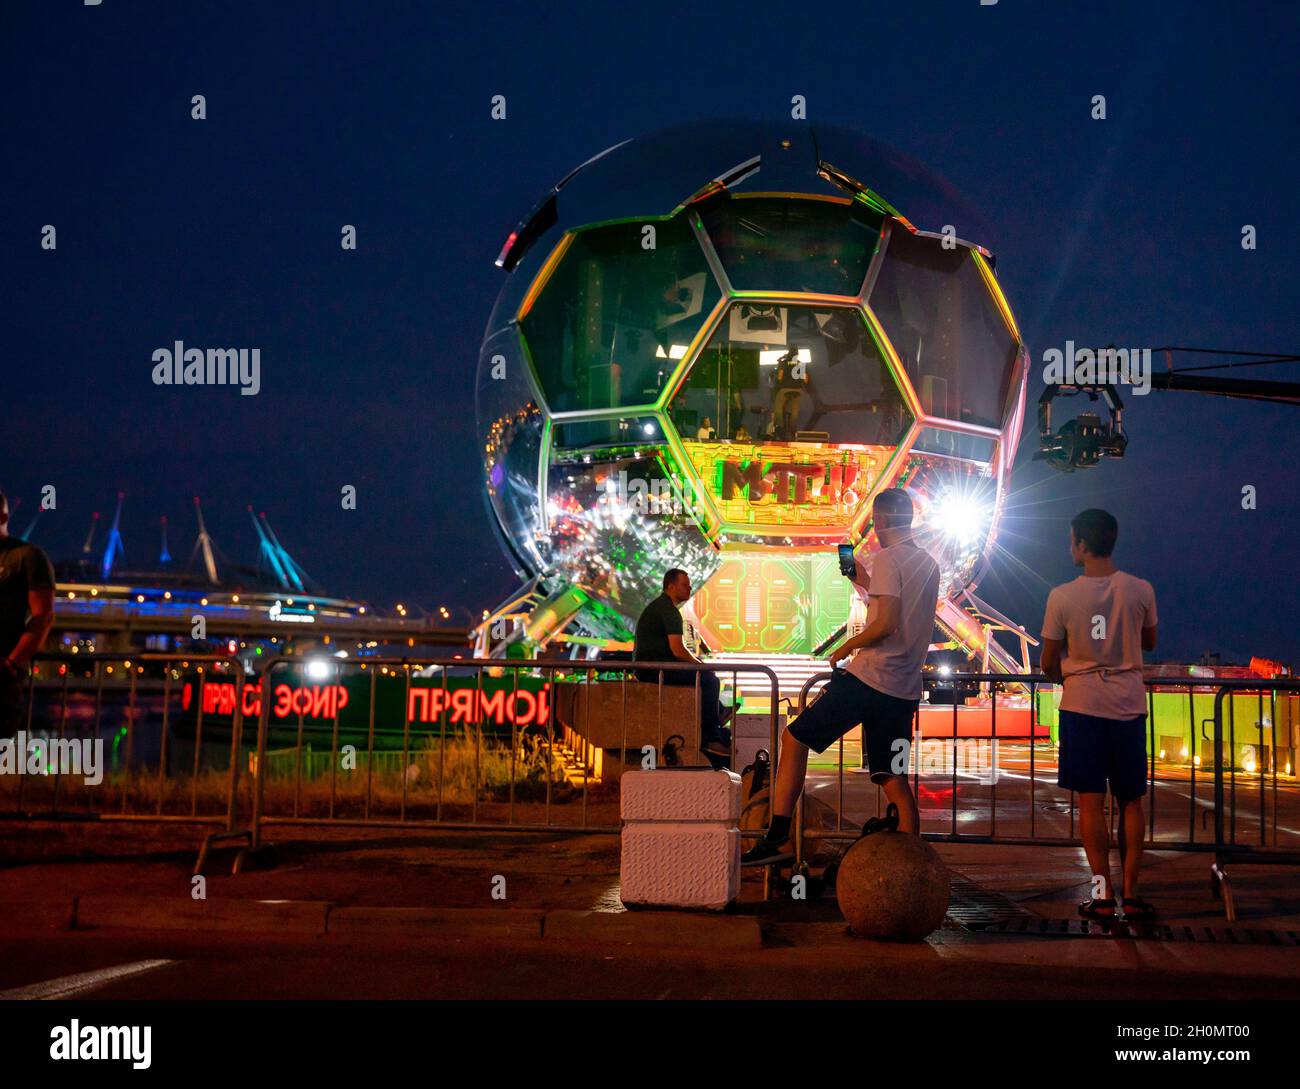 EURO 2020 Match TV-Kanal Studiokonstruktion wie ein Fußball in der Nähe der Gazprom Arena, Nachtsendung während des UEFA-Turniers, St. Petersburg Russland Stockfoto